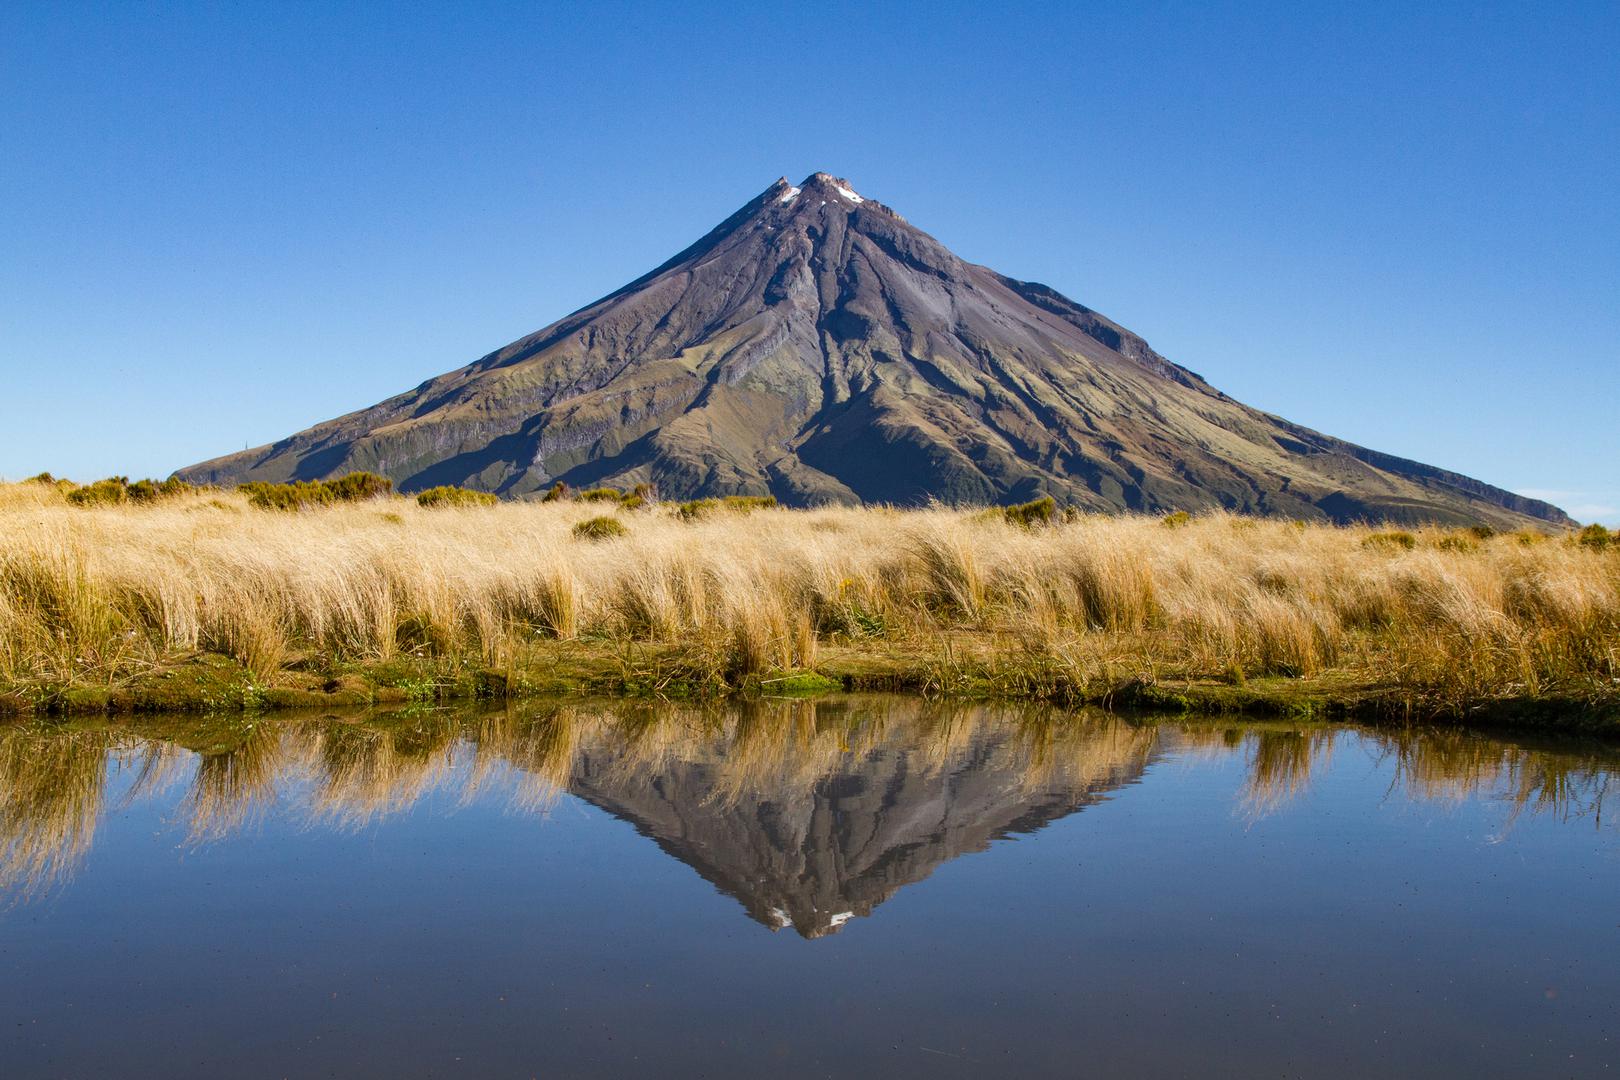 2518 metara visok je ugasli vulkan Taranaki, a lani je proglašen jednom od najboljih svjetskih turističkih destinacija